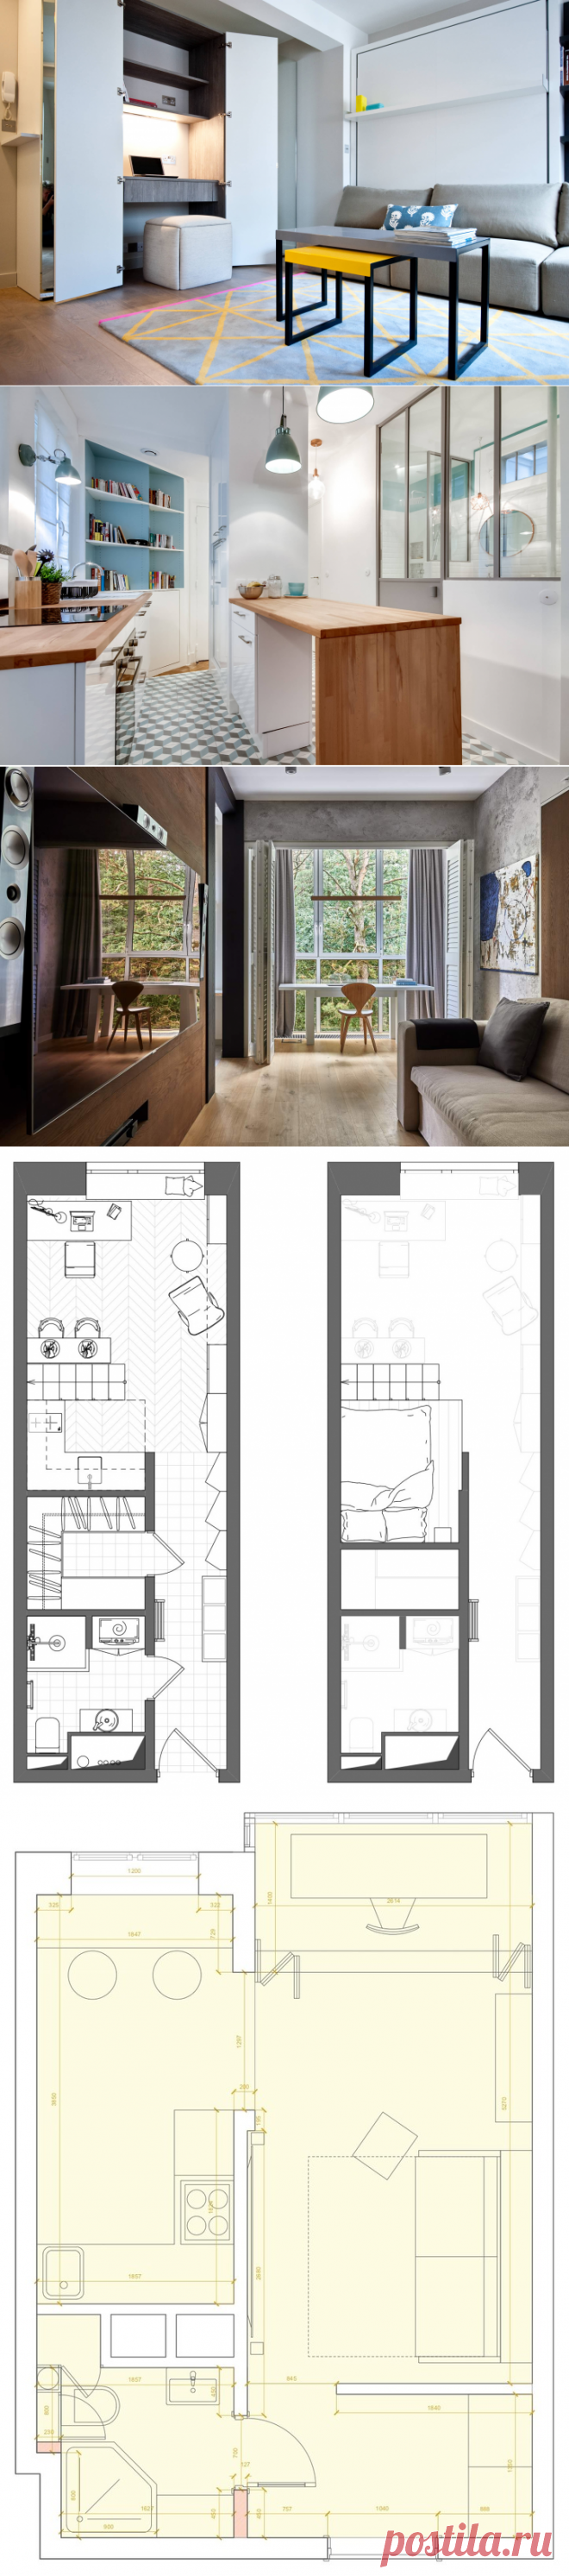 Дизайн квартиры-студии 25 кв м – фото и идеи интерьера для ремонта и дизайна студии | Houzz Россия